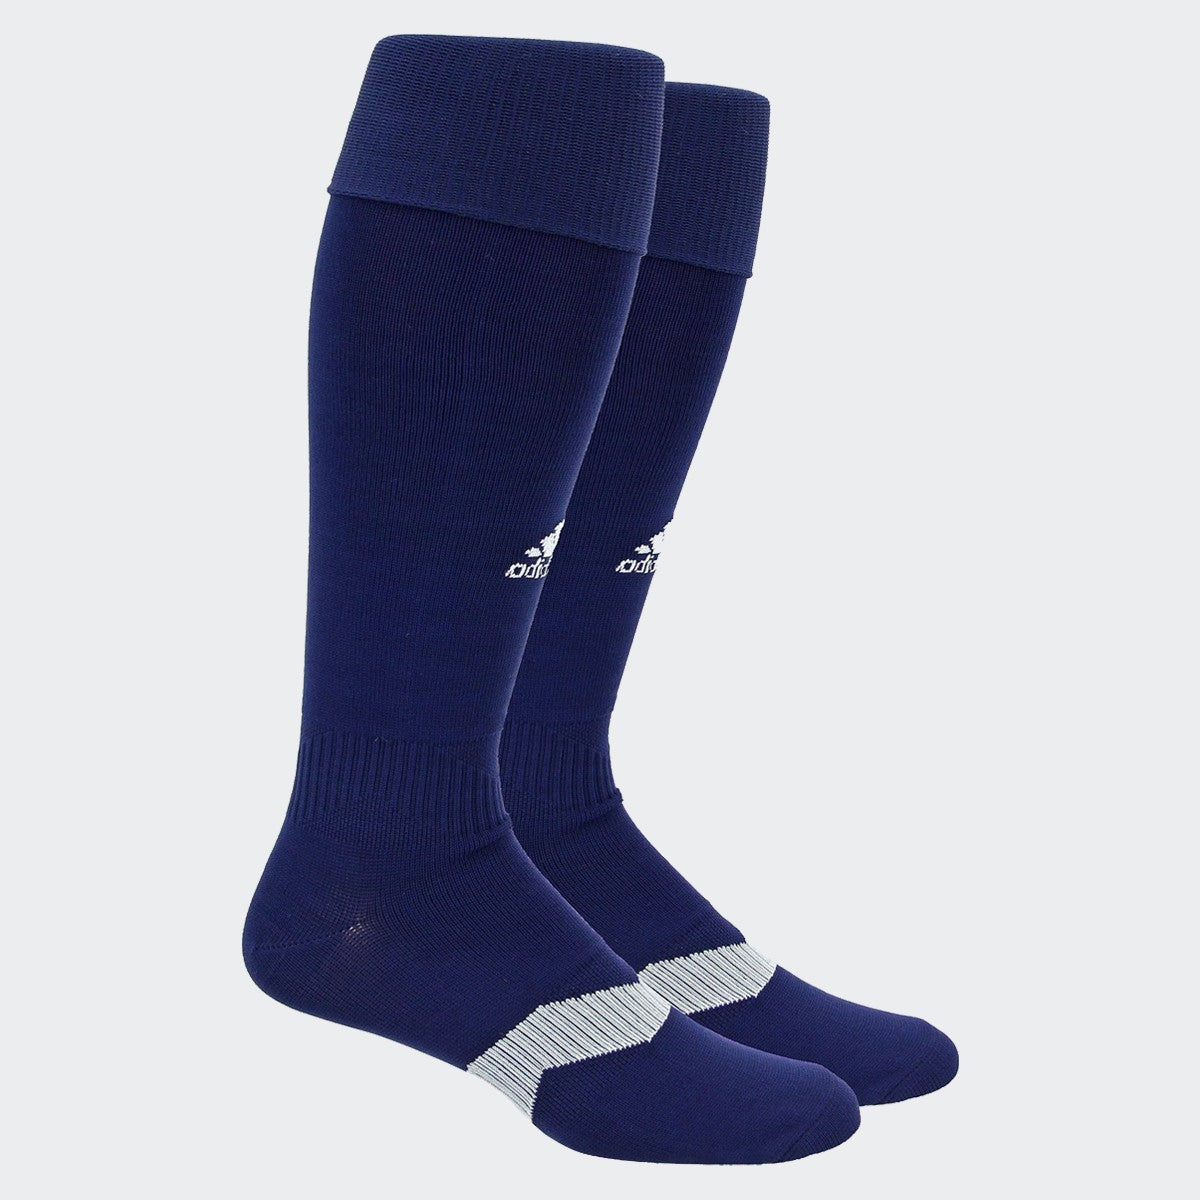 Men's Metro IV Soccer Socks - Navy